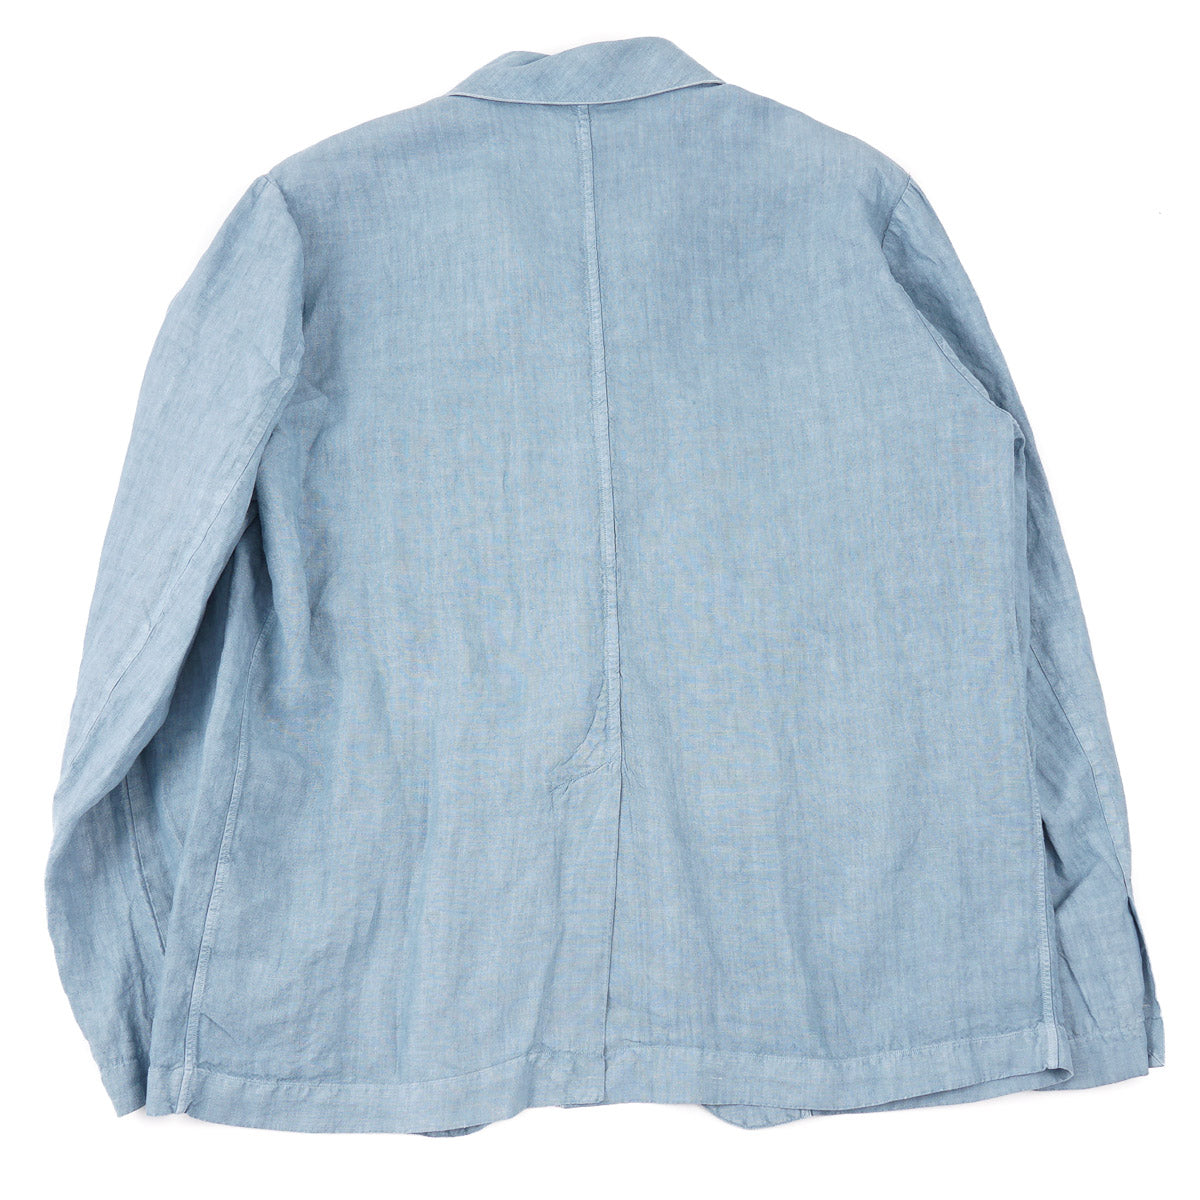 Finamore Unlined Linen Field Jacket - Top Shelf Apparel